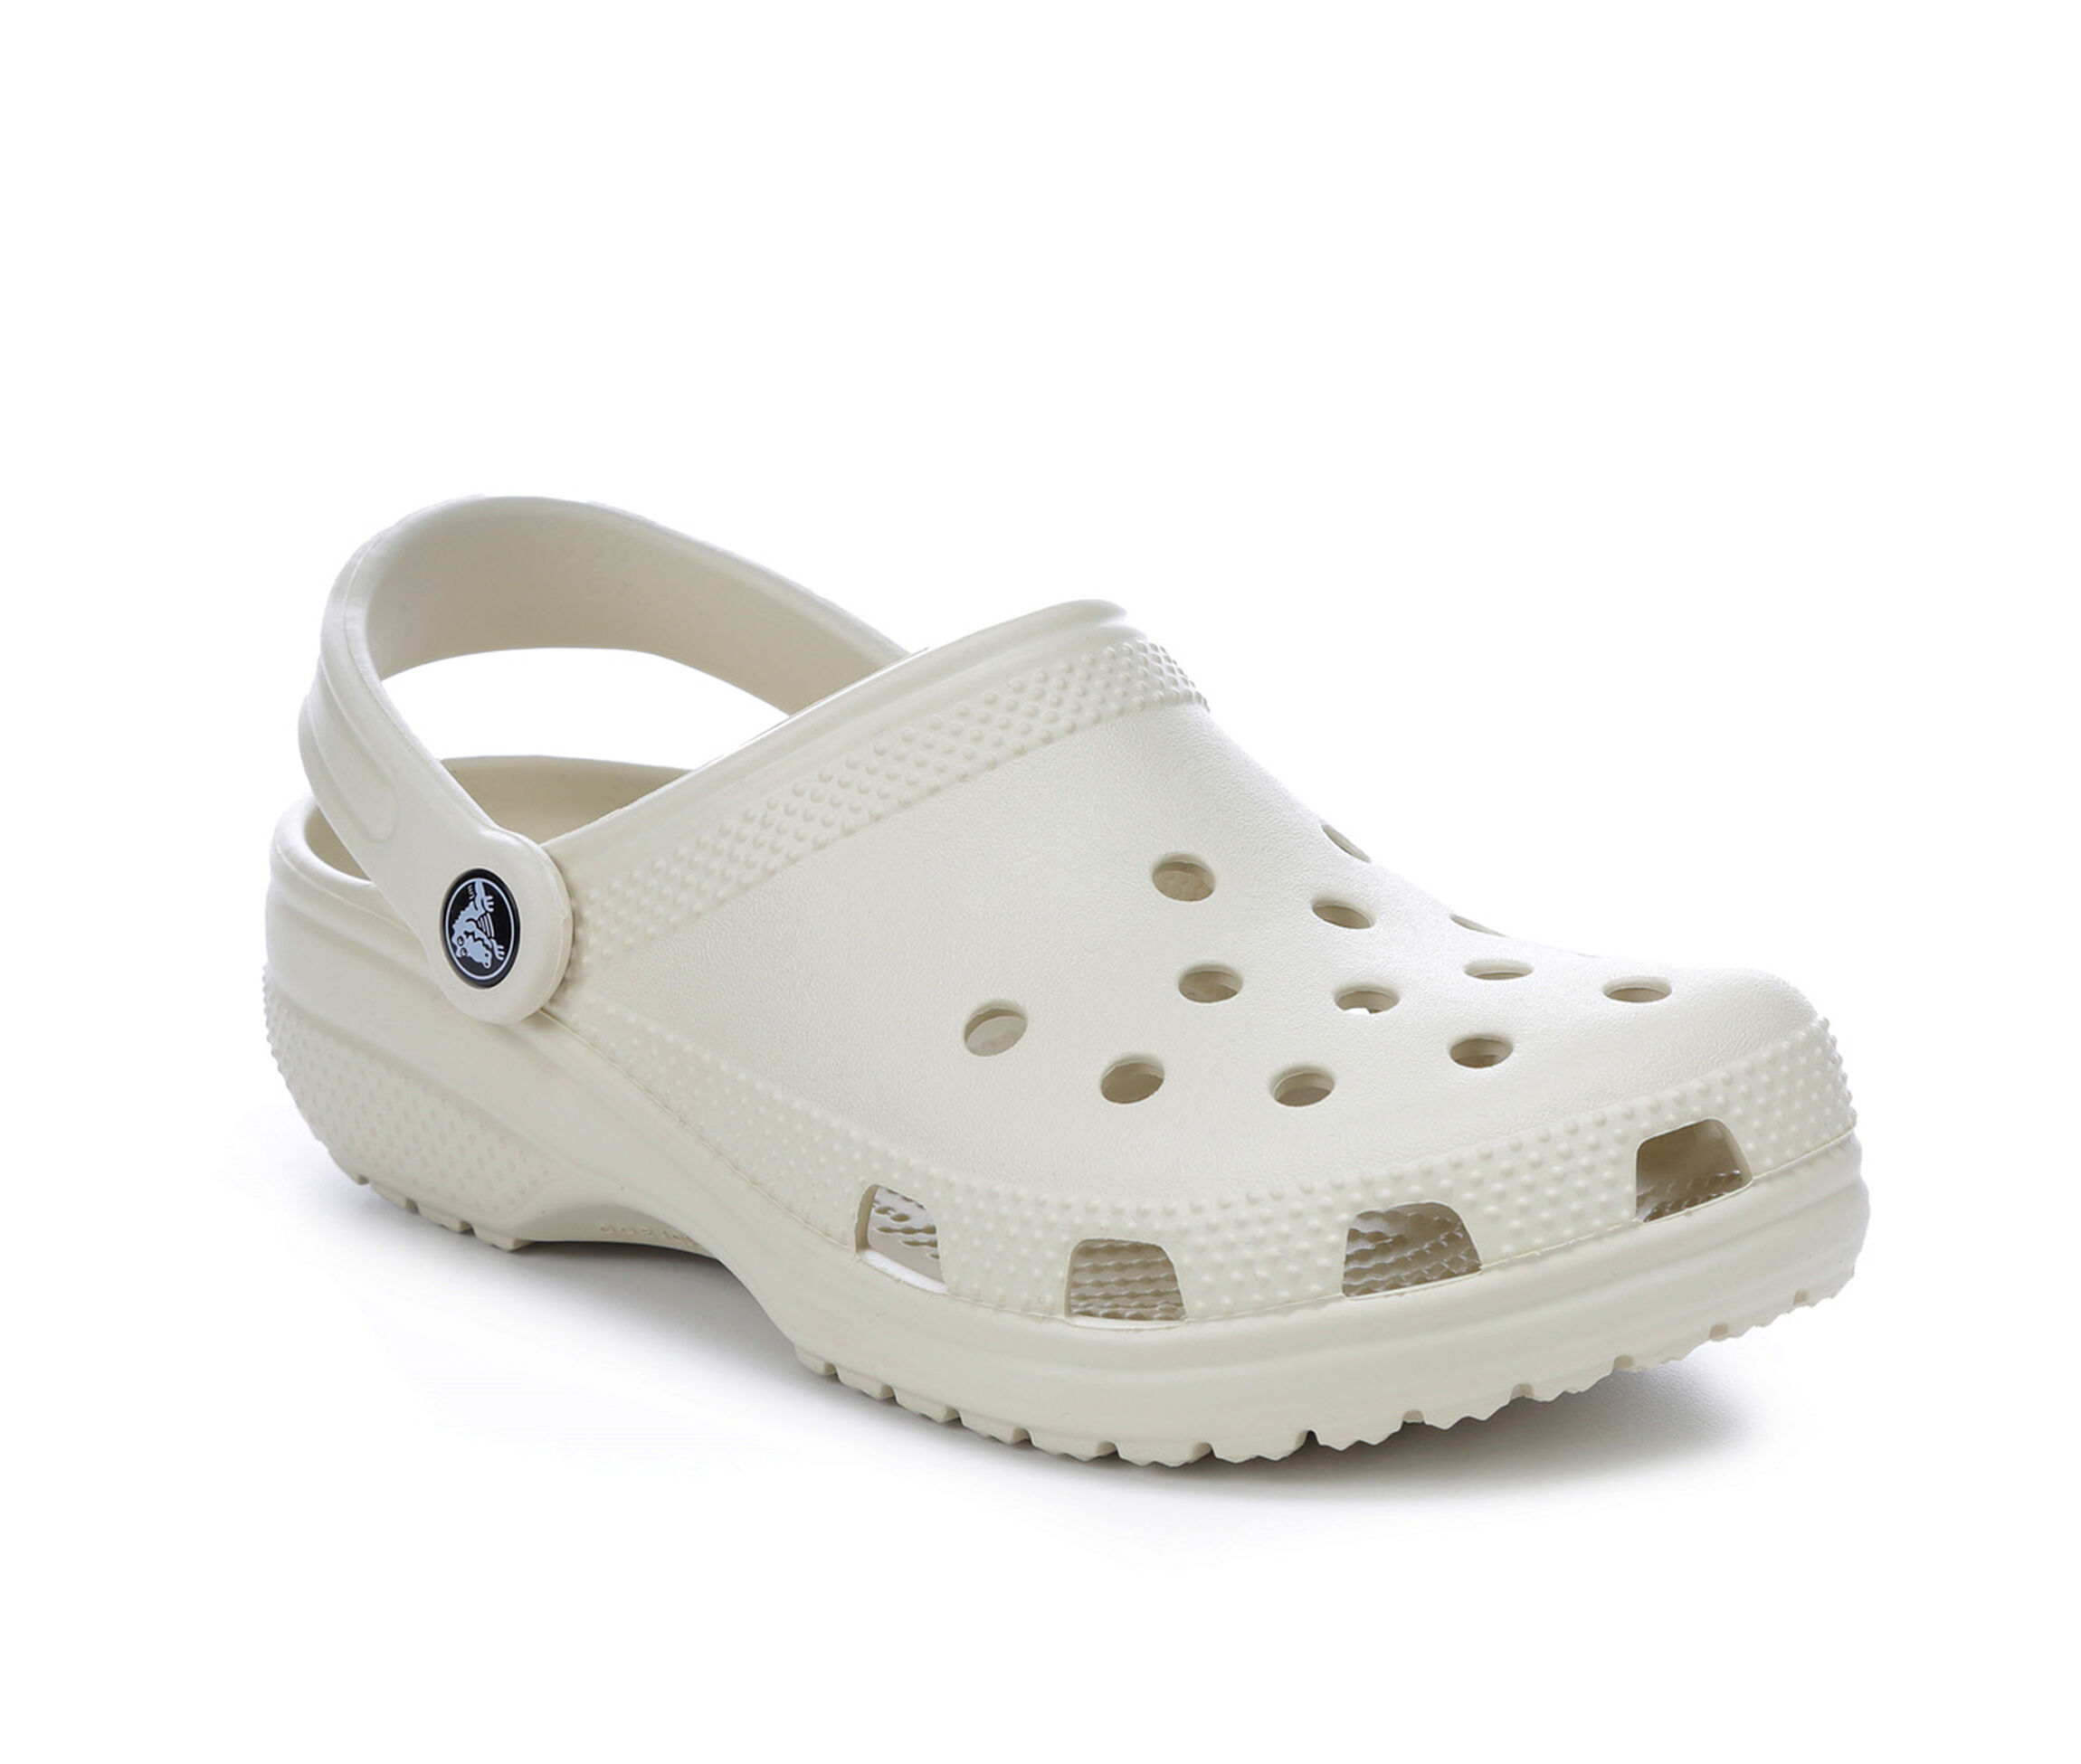 Men's Crocs Sandals | Shoe Carnival